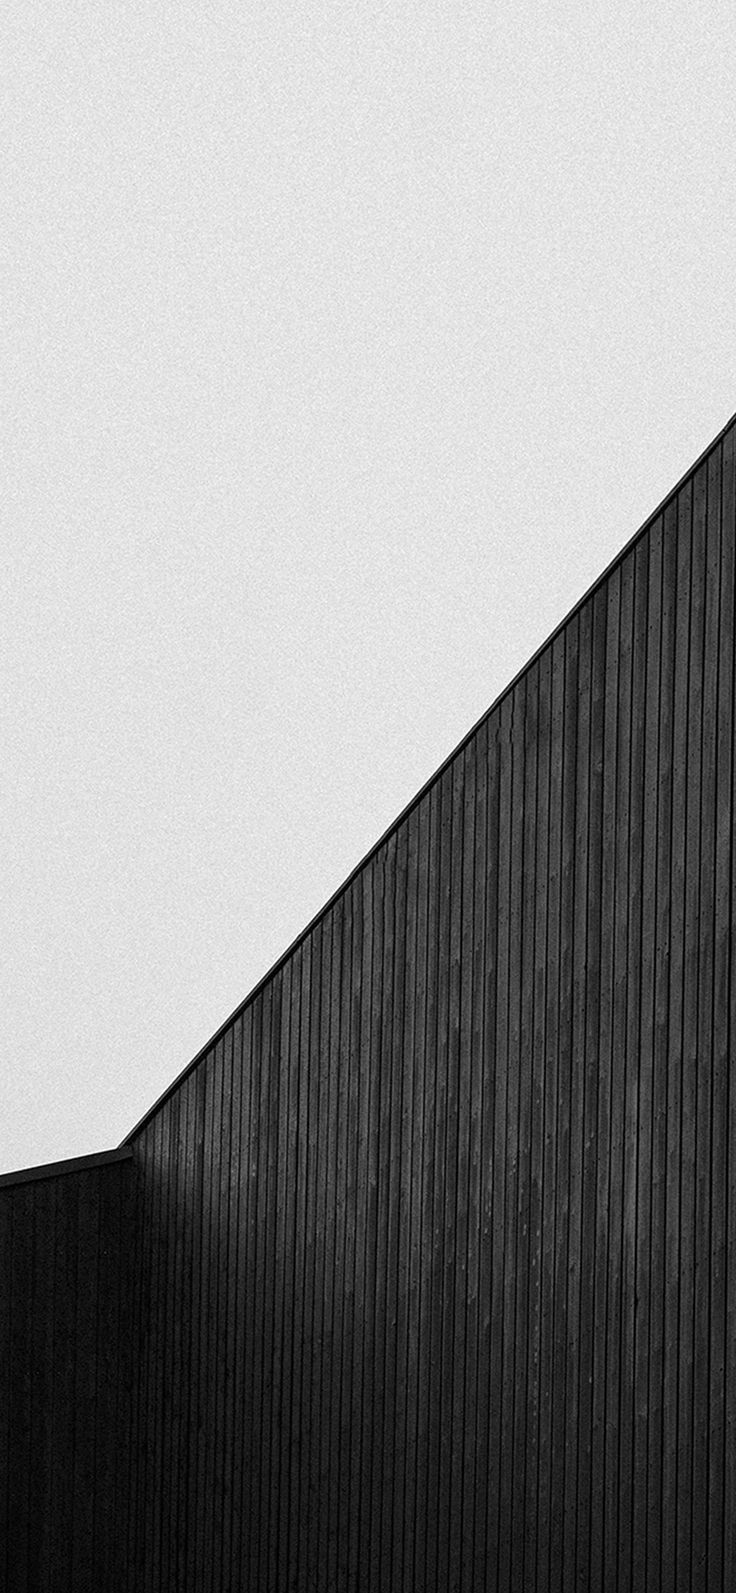 fond d'écran simple,blanc,mur,architecture,ligne,noir et blanc